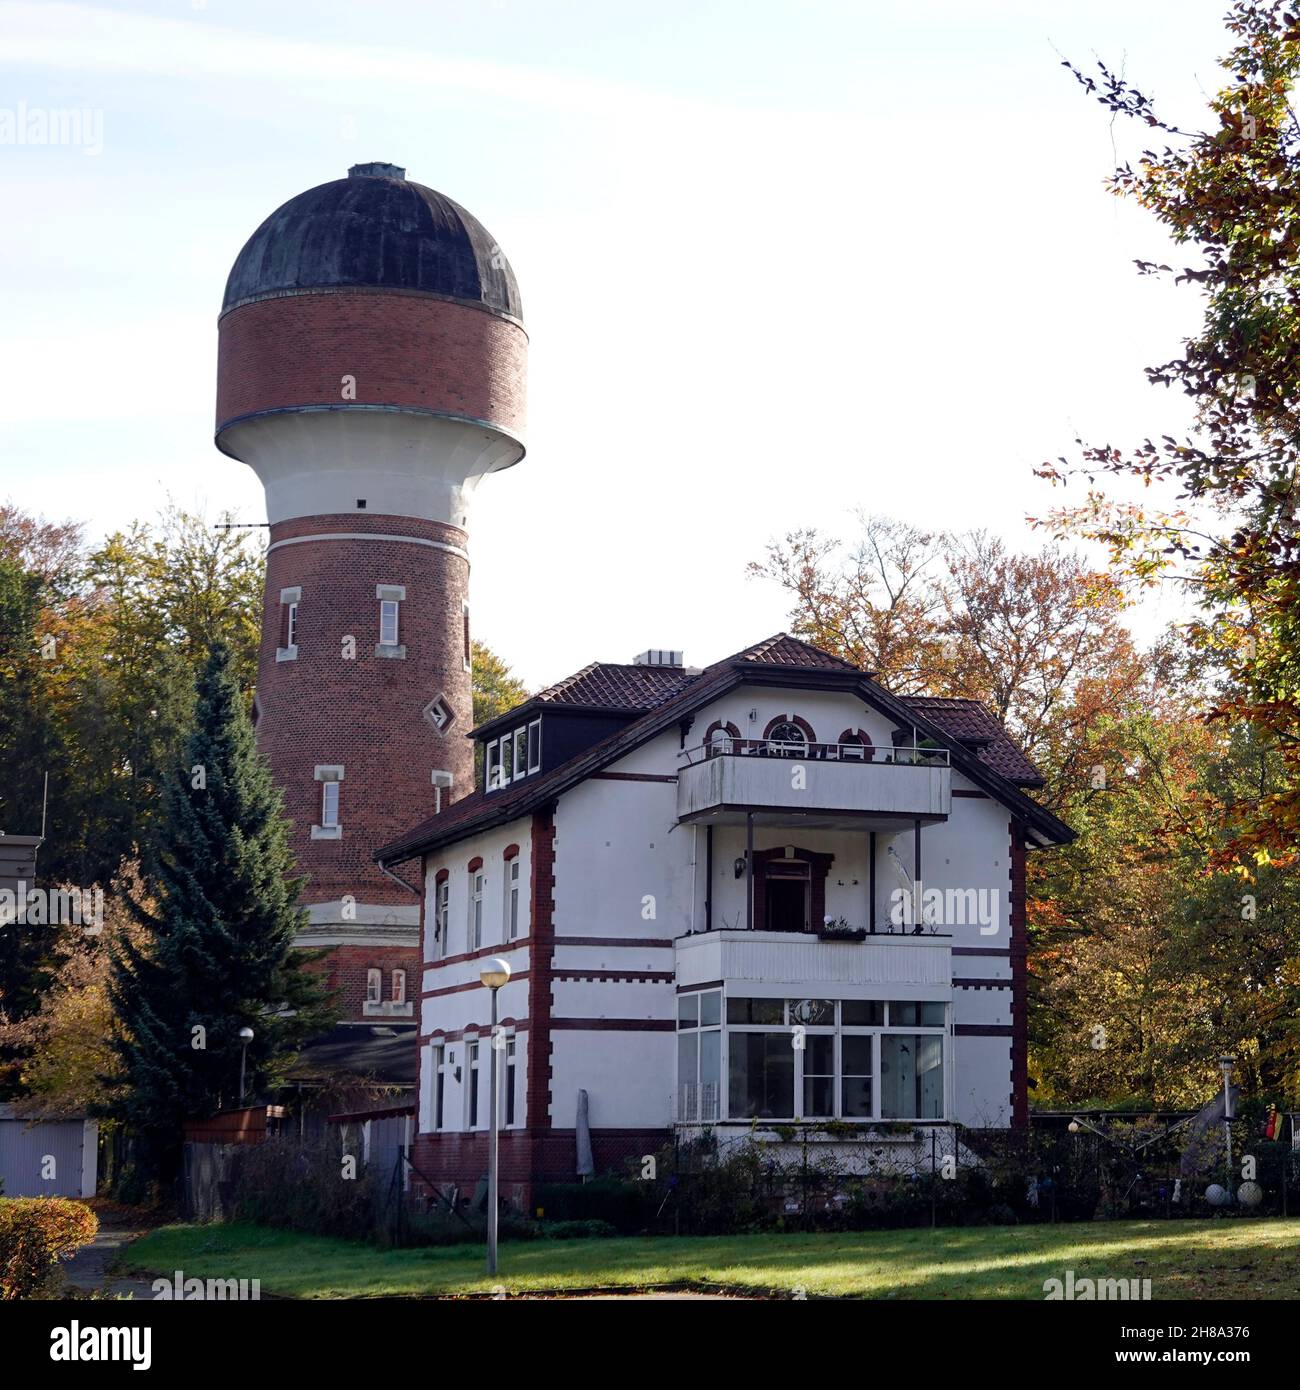 Baudenkmal Wasserturm und Wohngebäude, Hansestadt Uelzen, Niedersachsen, Allemagne Banque D'Images